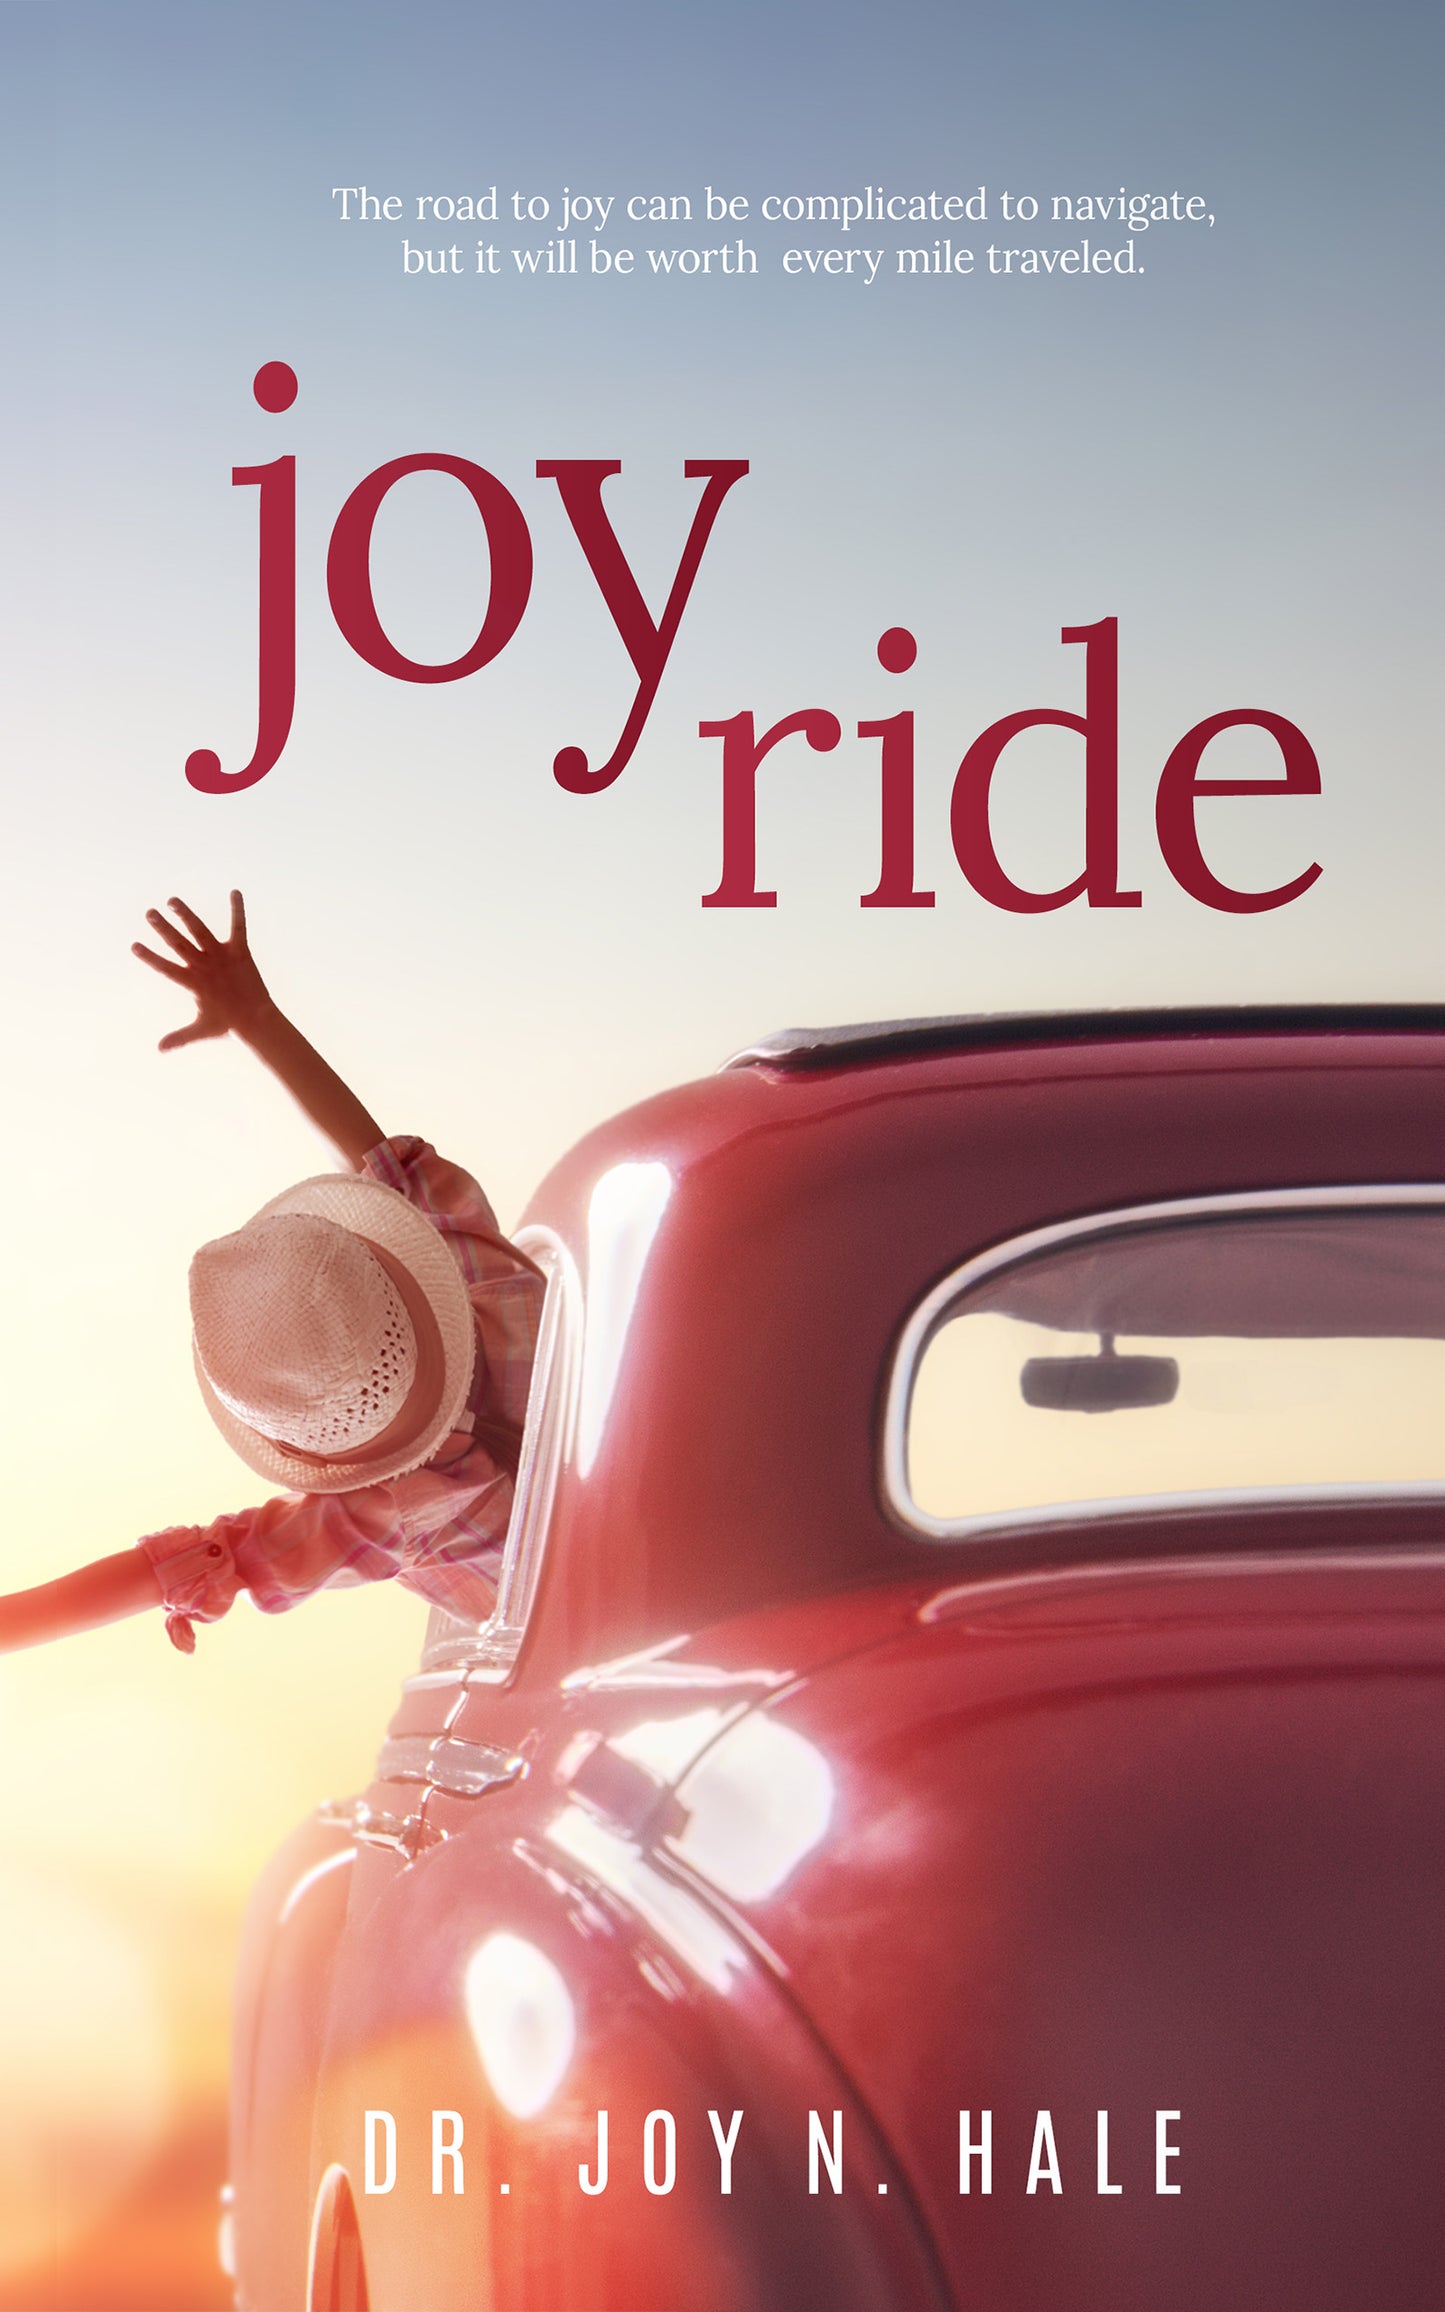 Joy Ride by Dr. Joy N. Hale